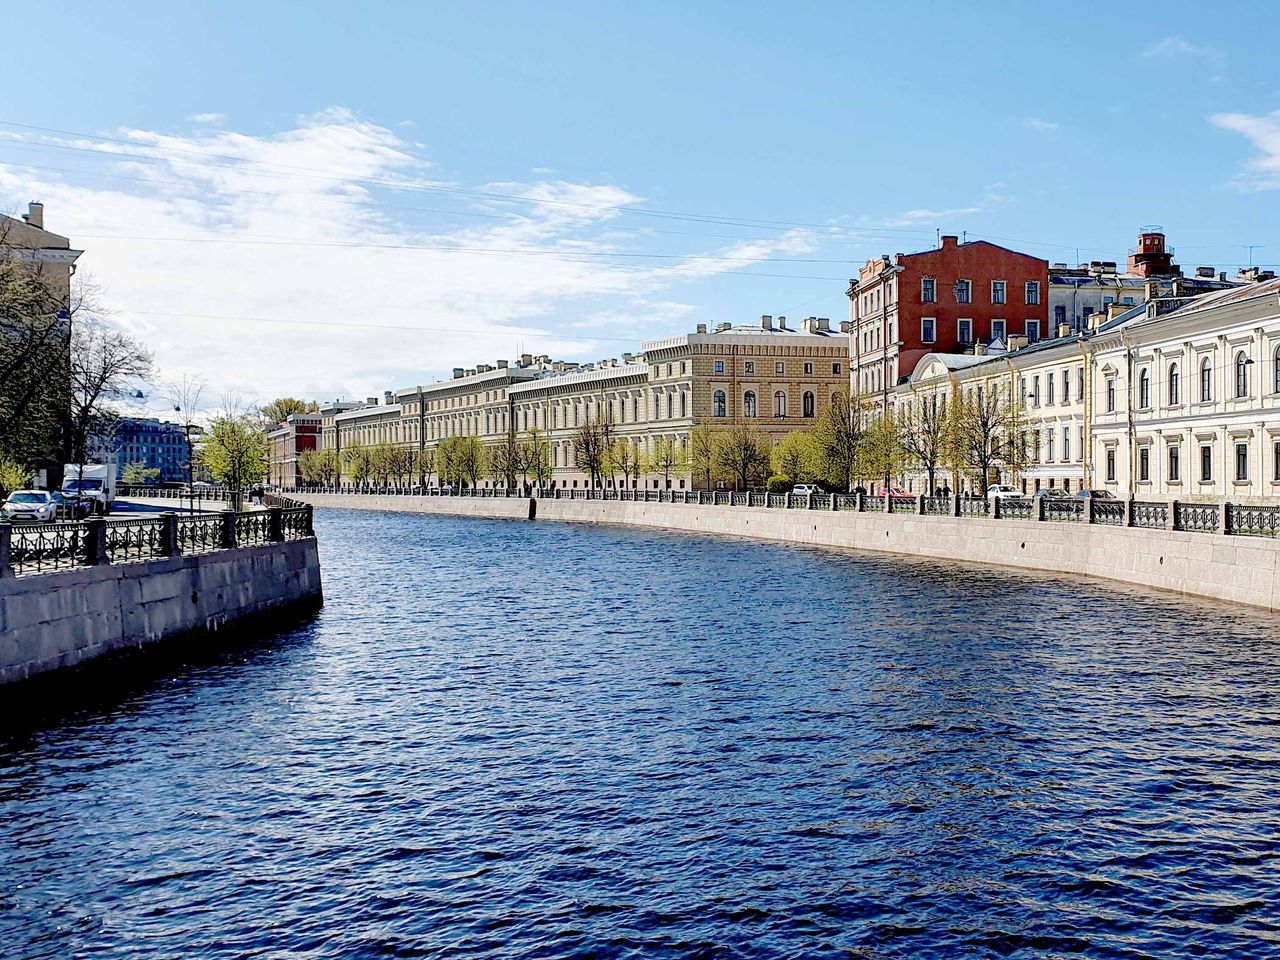 Весь Петербург за 5 часов | Цена 1020₽, отзывы, описание экскурсии